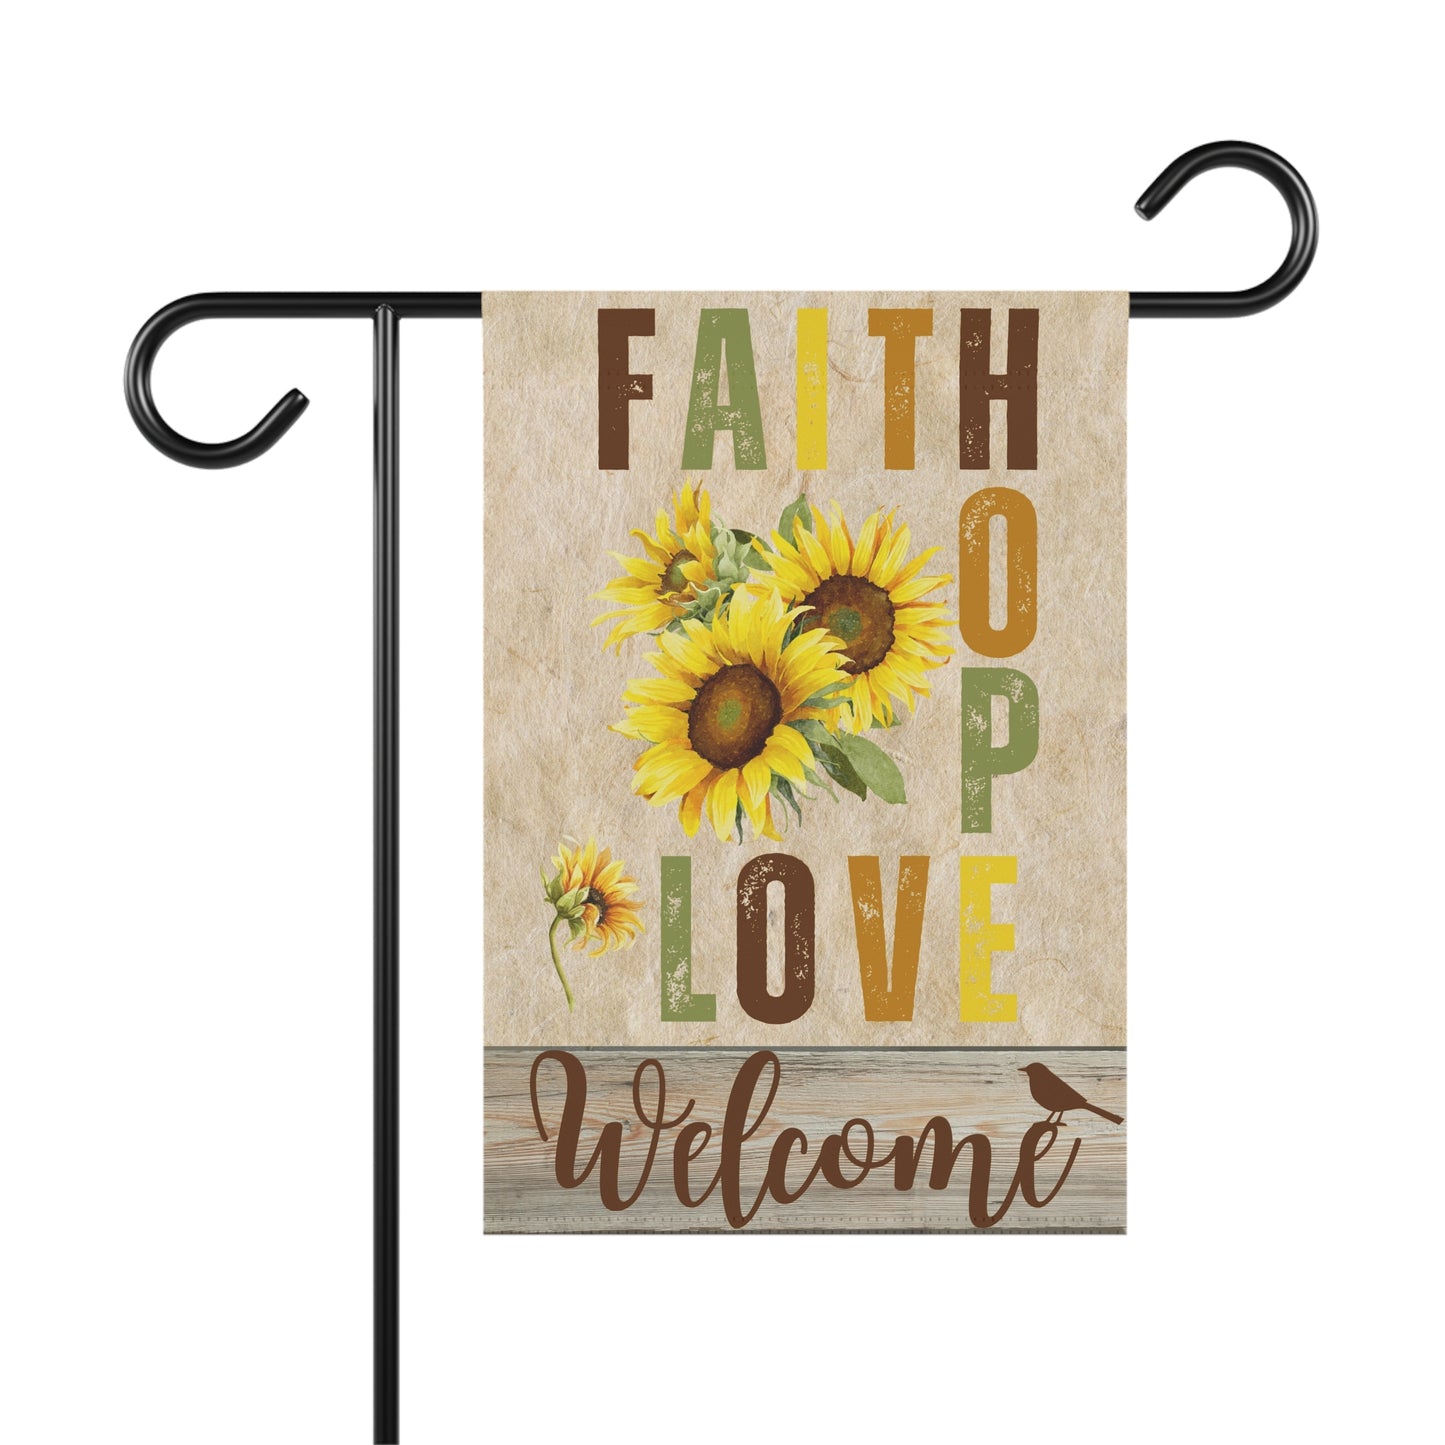 Faith Hope & Love Welcome Garden Flag